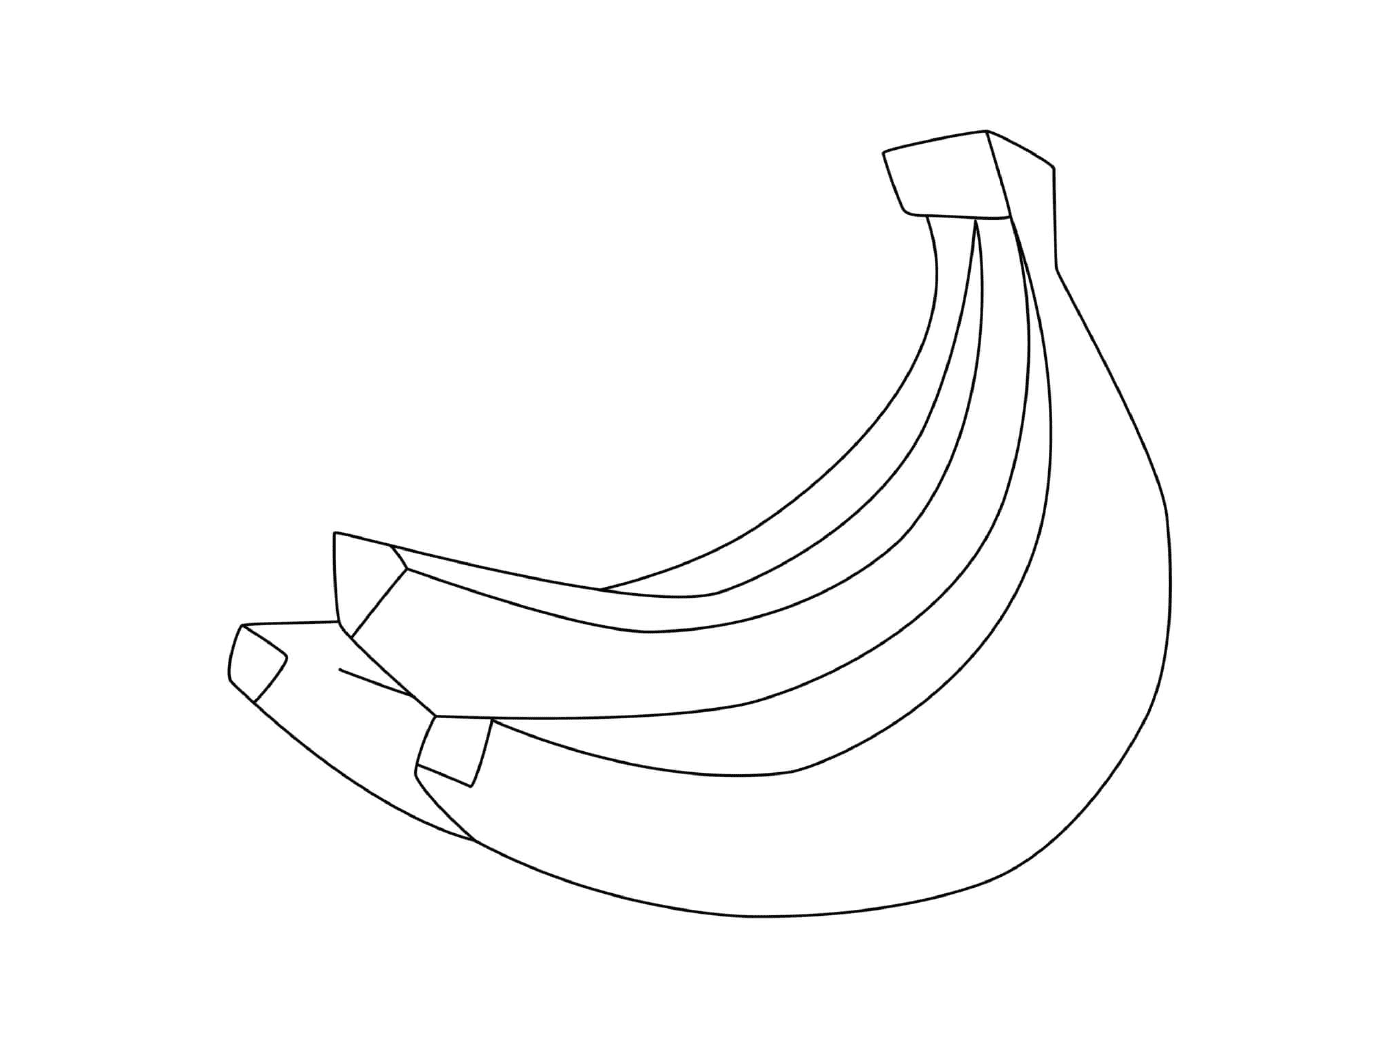   Une grappe de bananes sur une table 